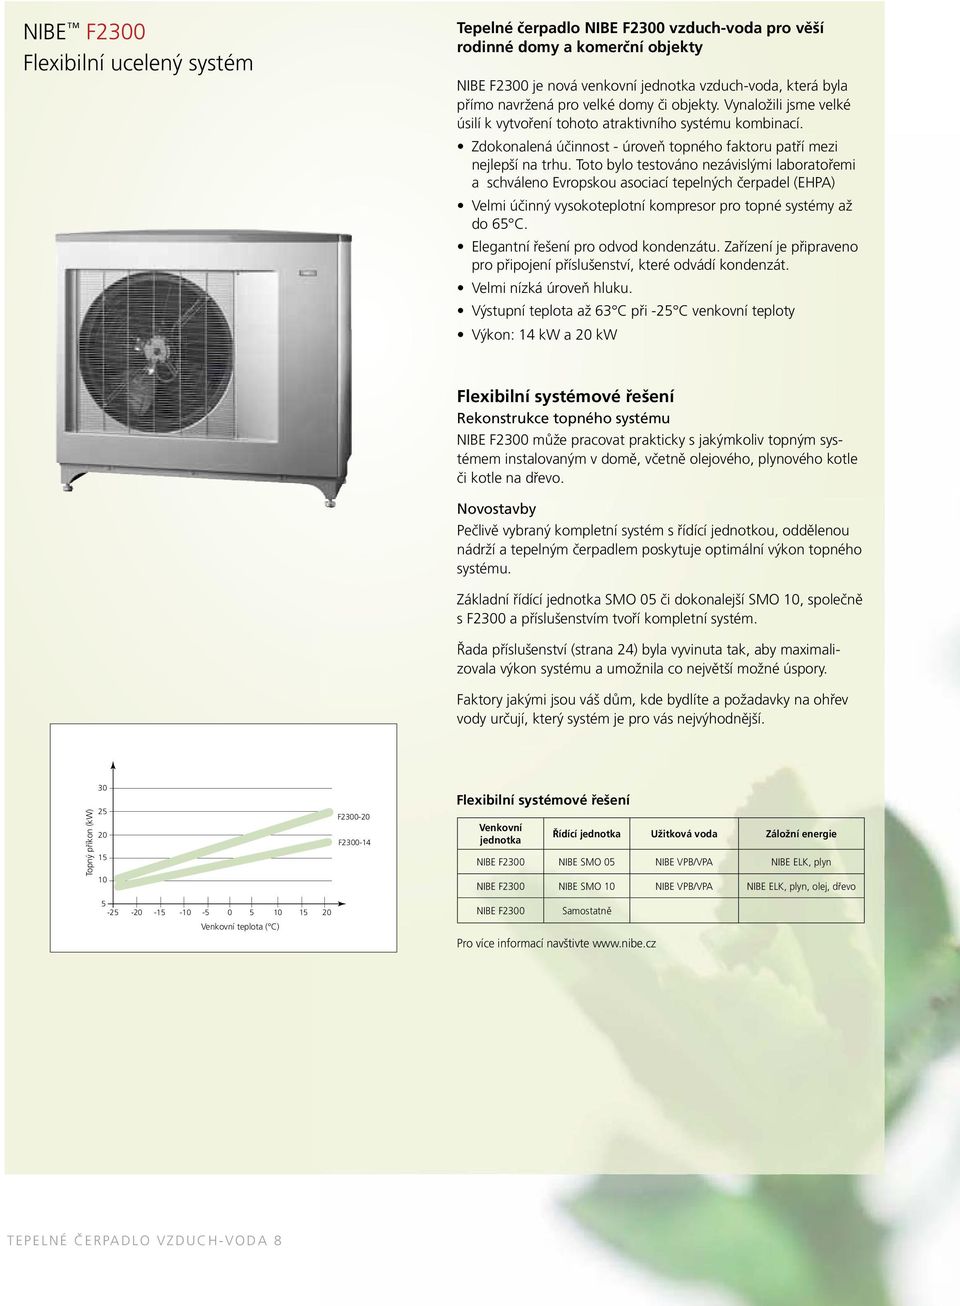 Toto bylo testováno nezávislými laboratořemi a schváleno Evropskou asociací tepelných čerpadel (EHPA) Velmi účinný vysokoteplotní kompresor pro topné systémy až do 65 C.